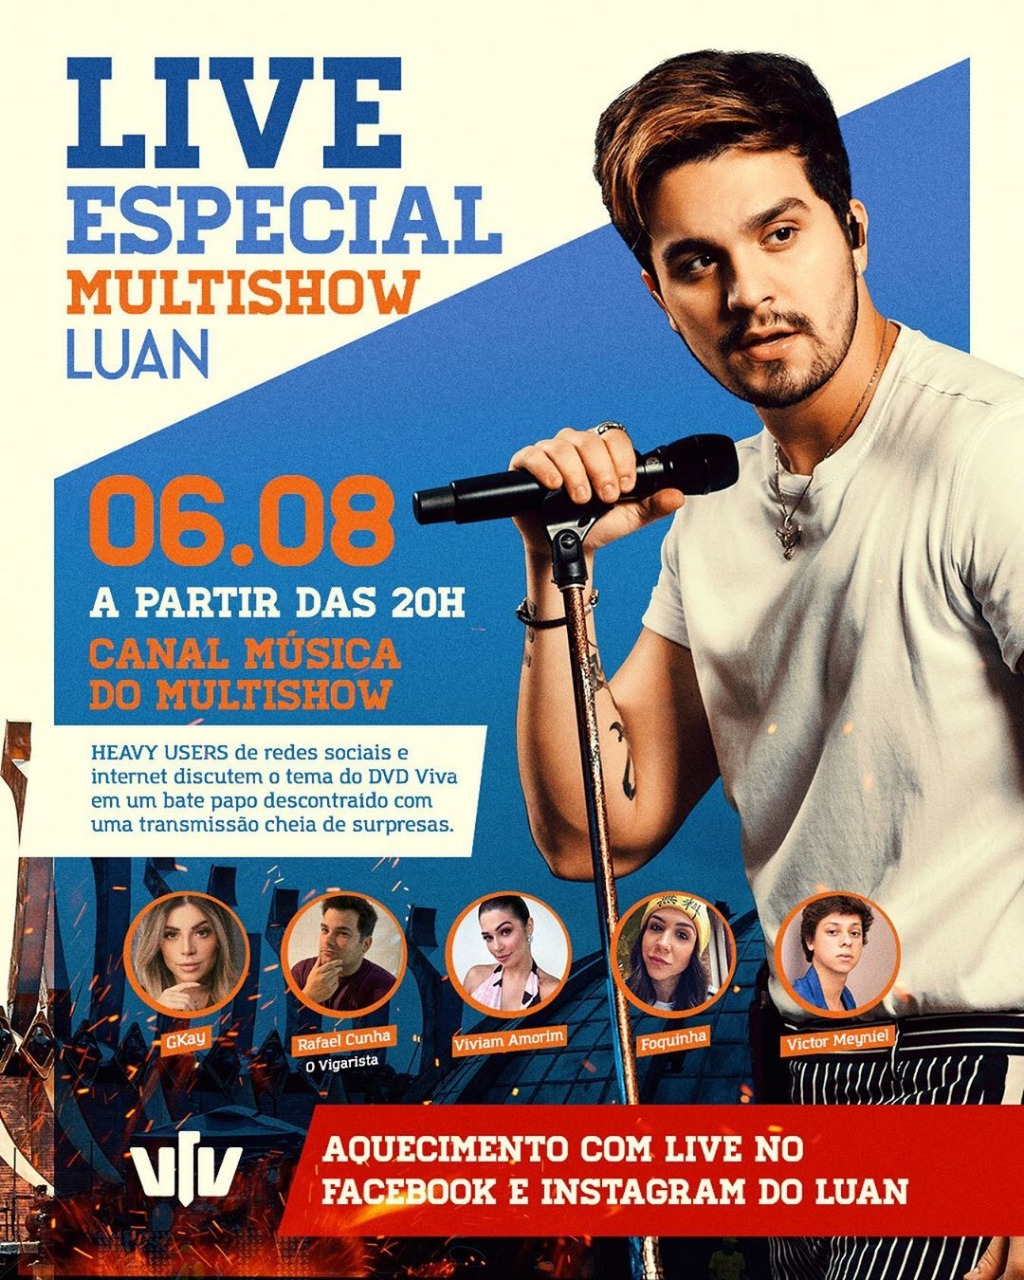 Multishow e Luan Santana fazem ação para divulgar “Viva”, novo DVD do cantor 41